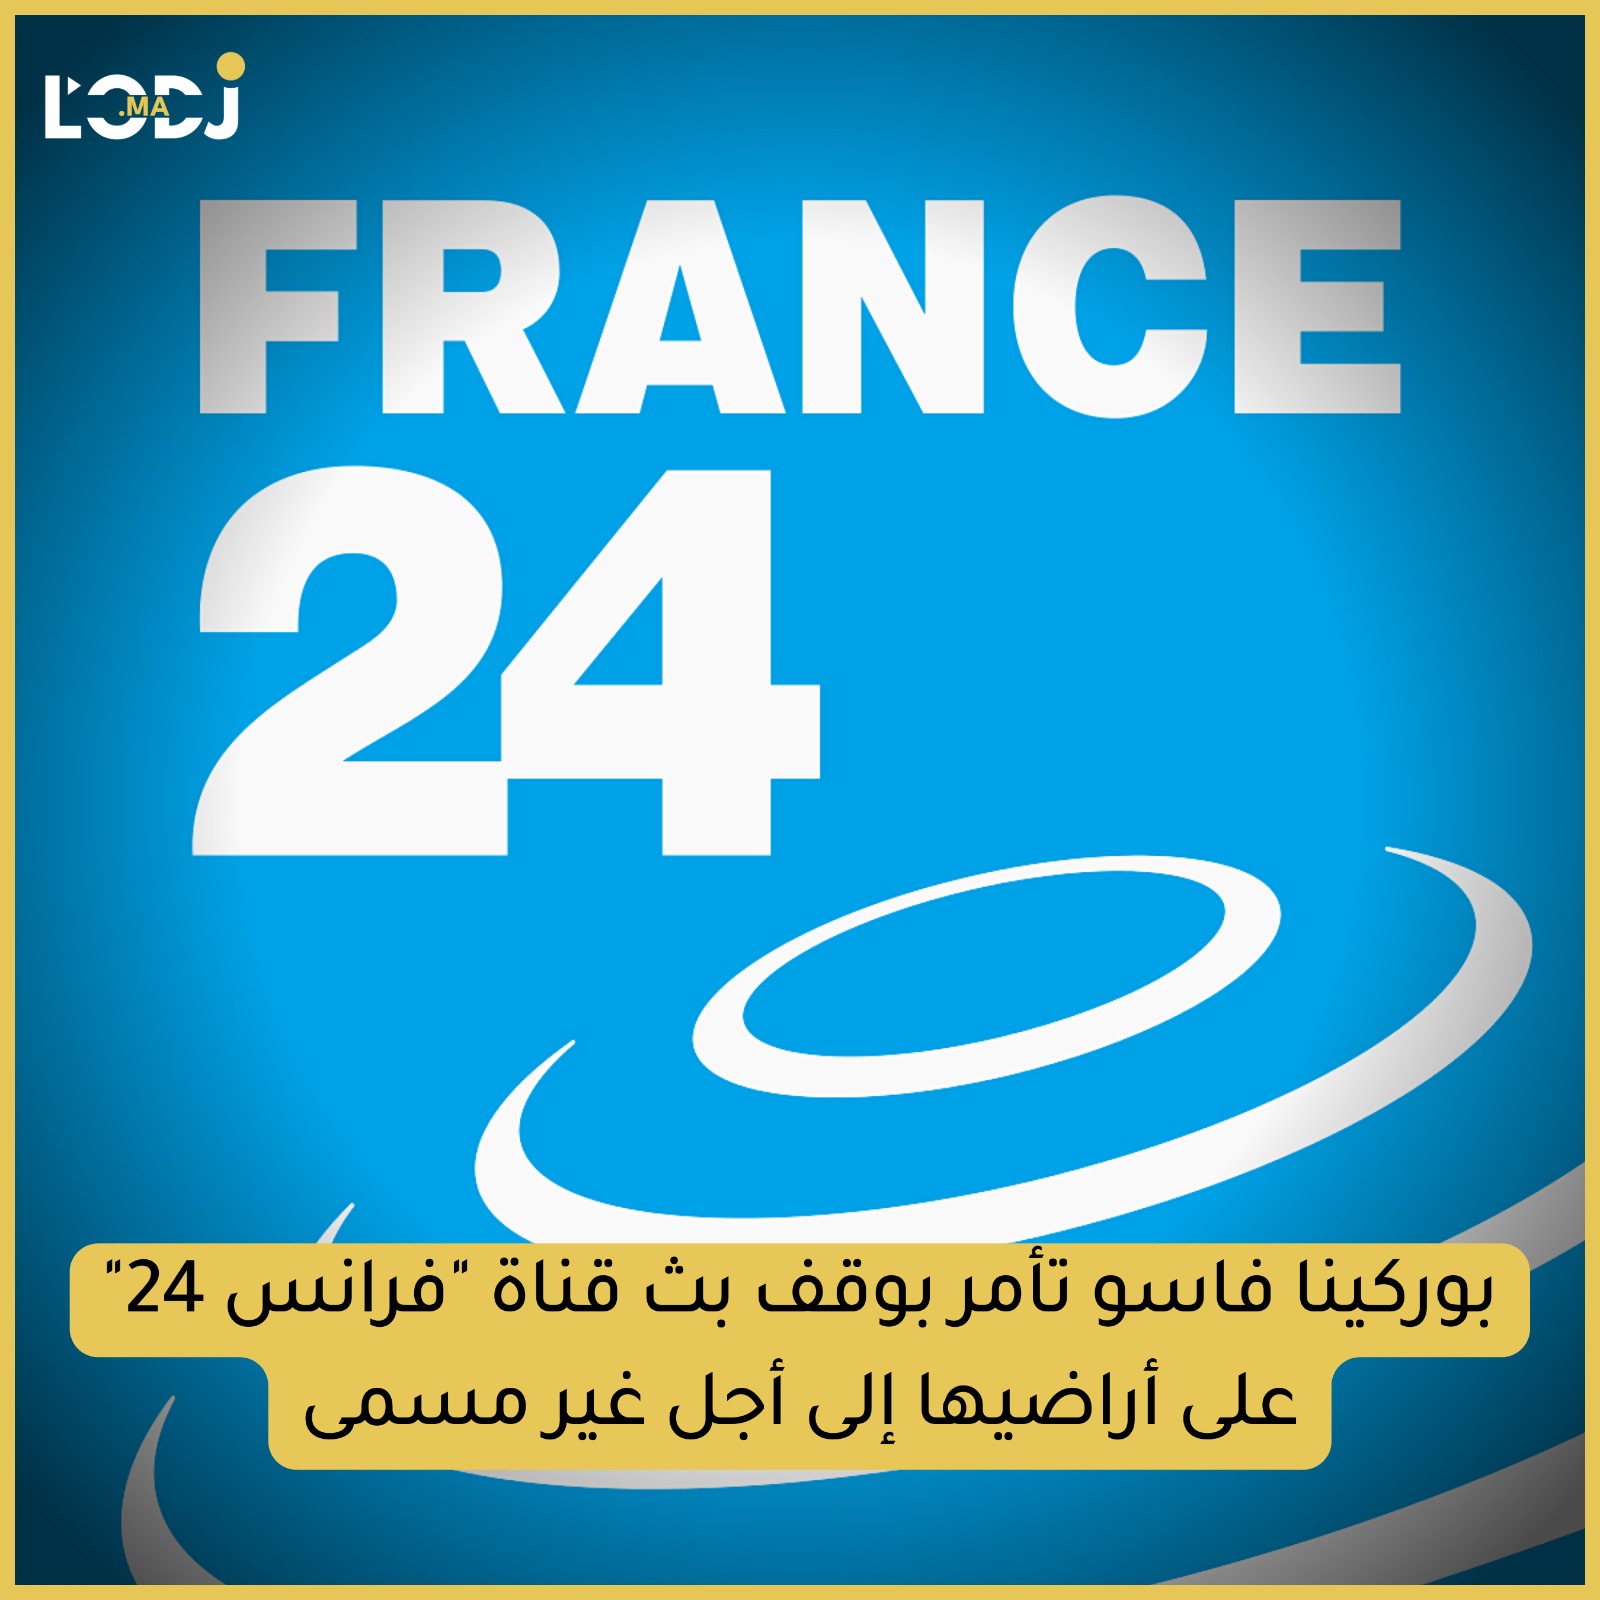 السلطات الانتقالية في بوركينا فاسو تأمر بوقف بث قناة "فرانس 24" على أراضيها إلى أجل غير مسمى